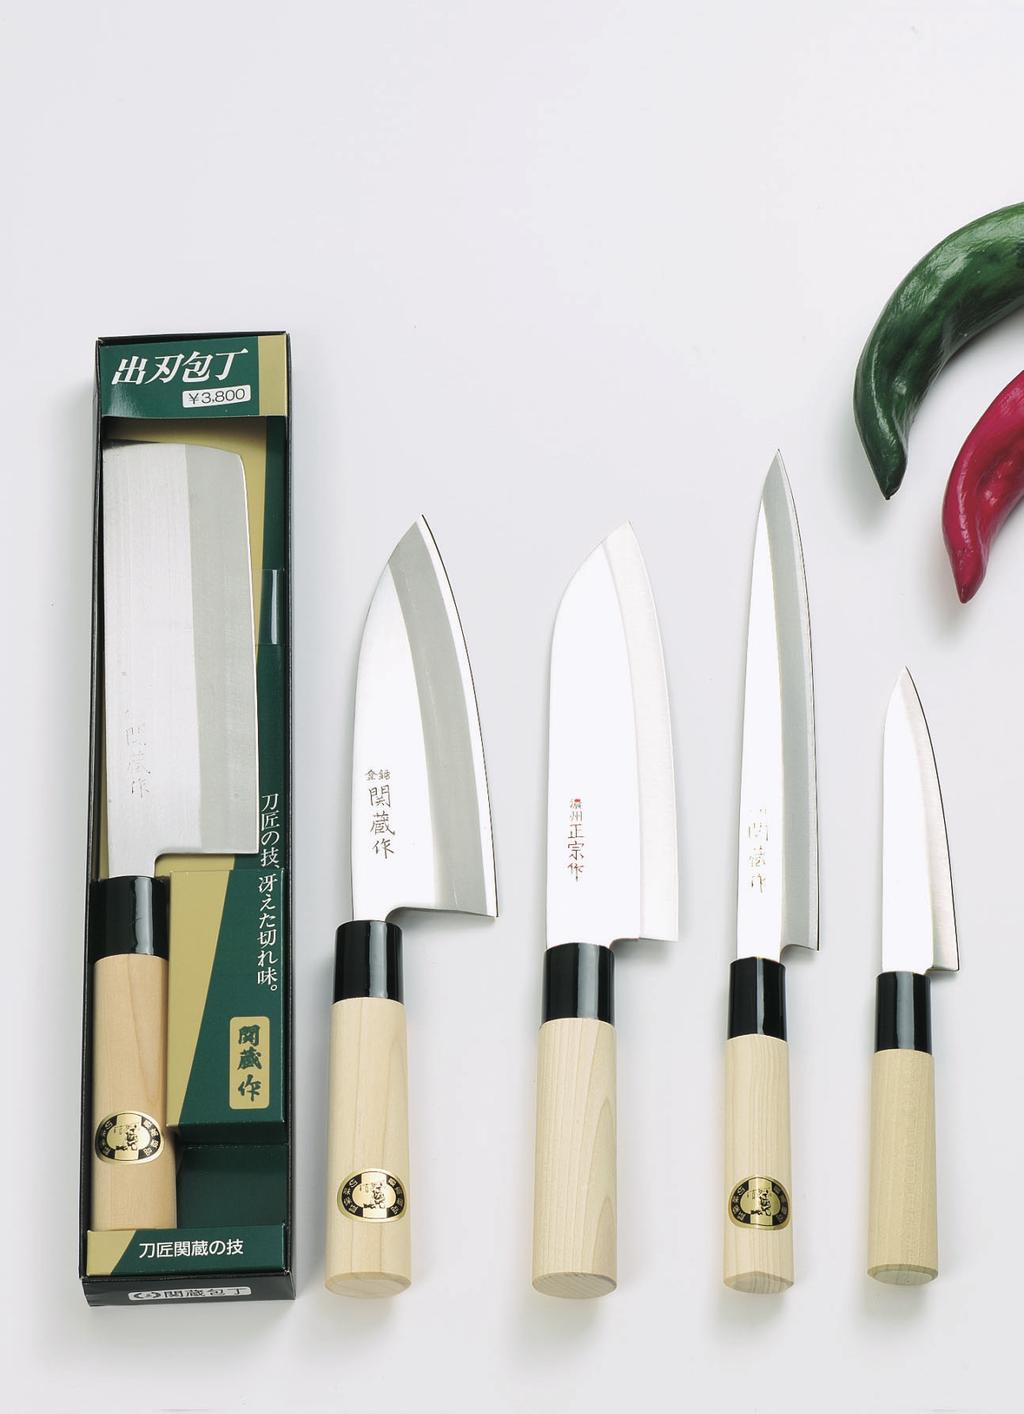 Traditionelle japanische Kochmesser Nr. 20214 NAKIRI Das Messer zum Zerkleinern von Gemüse. Klingenlänge 180 mm Gesamtlänge 310 mm Im traditionellen Stil hergestellt.